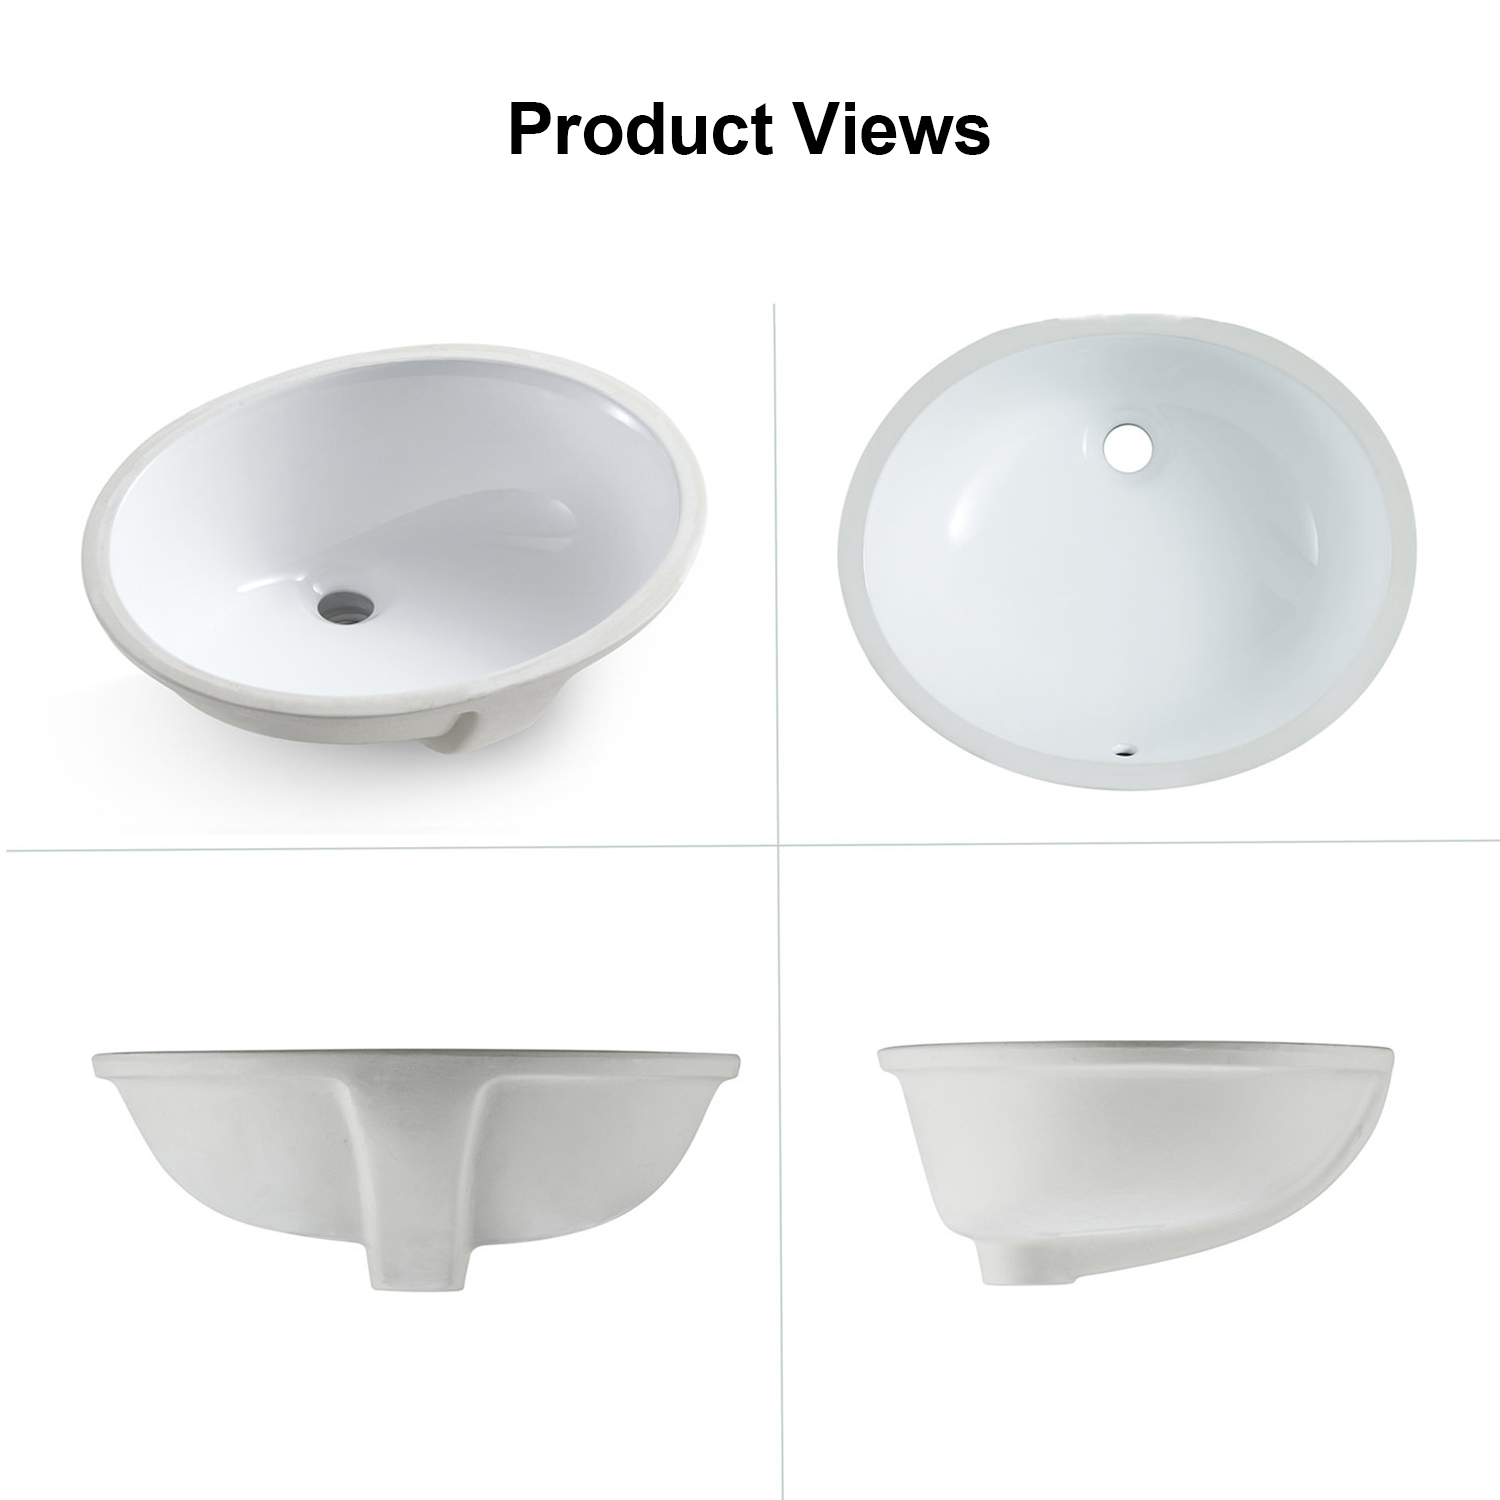 Фарфоровый туалетный столик с аквакубической глазурью, керамический сосуд, овальная раковина для ванной комнаты, устанавливаемая под столешницу